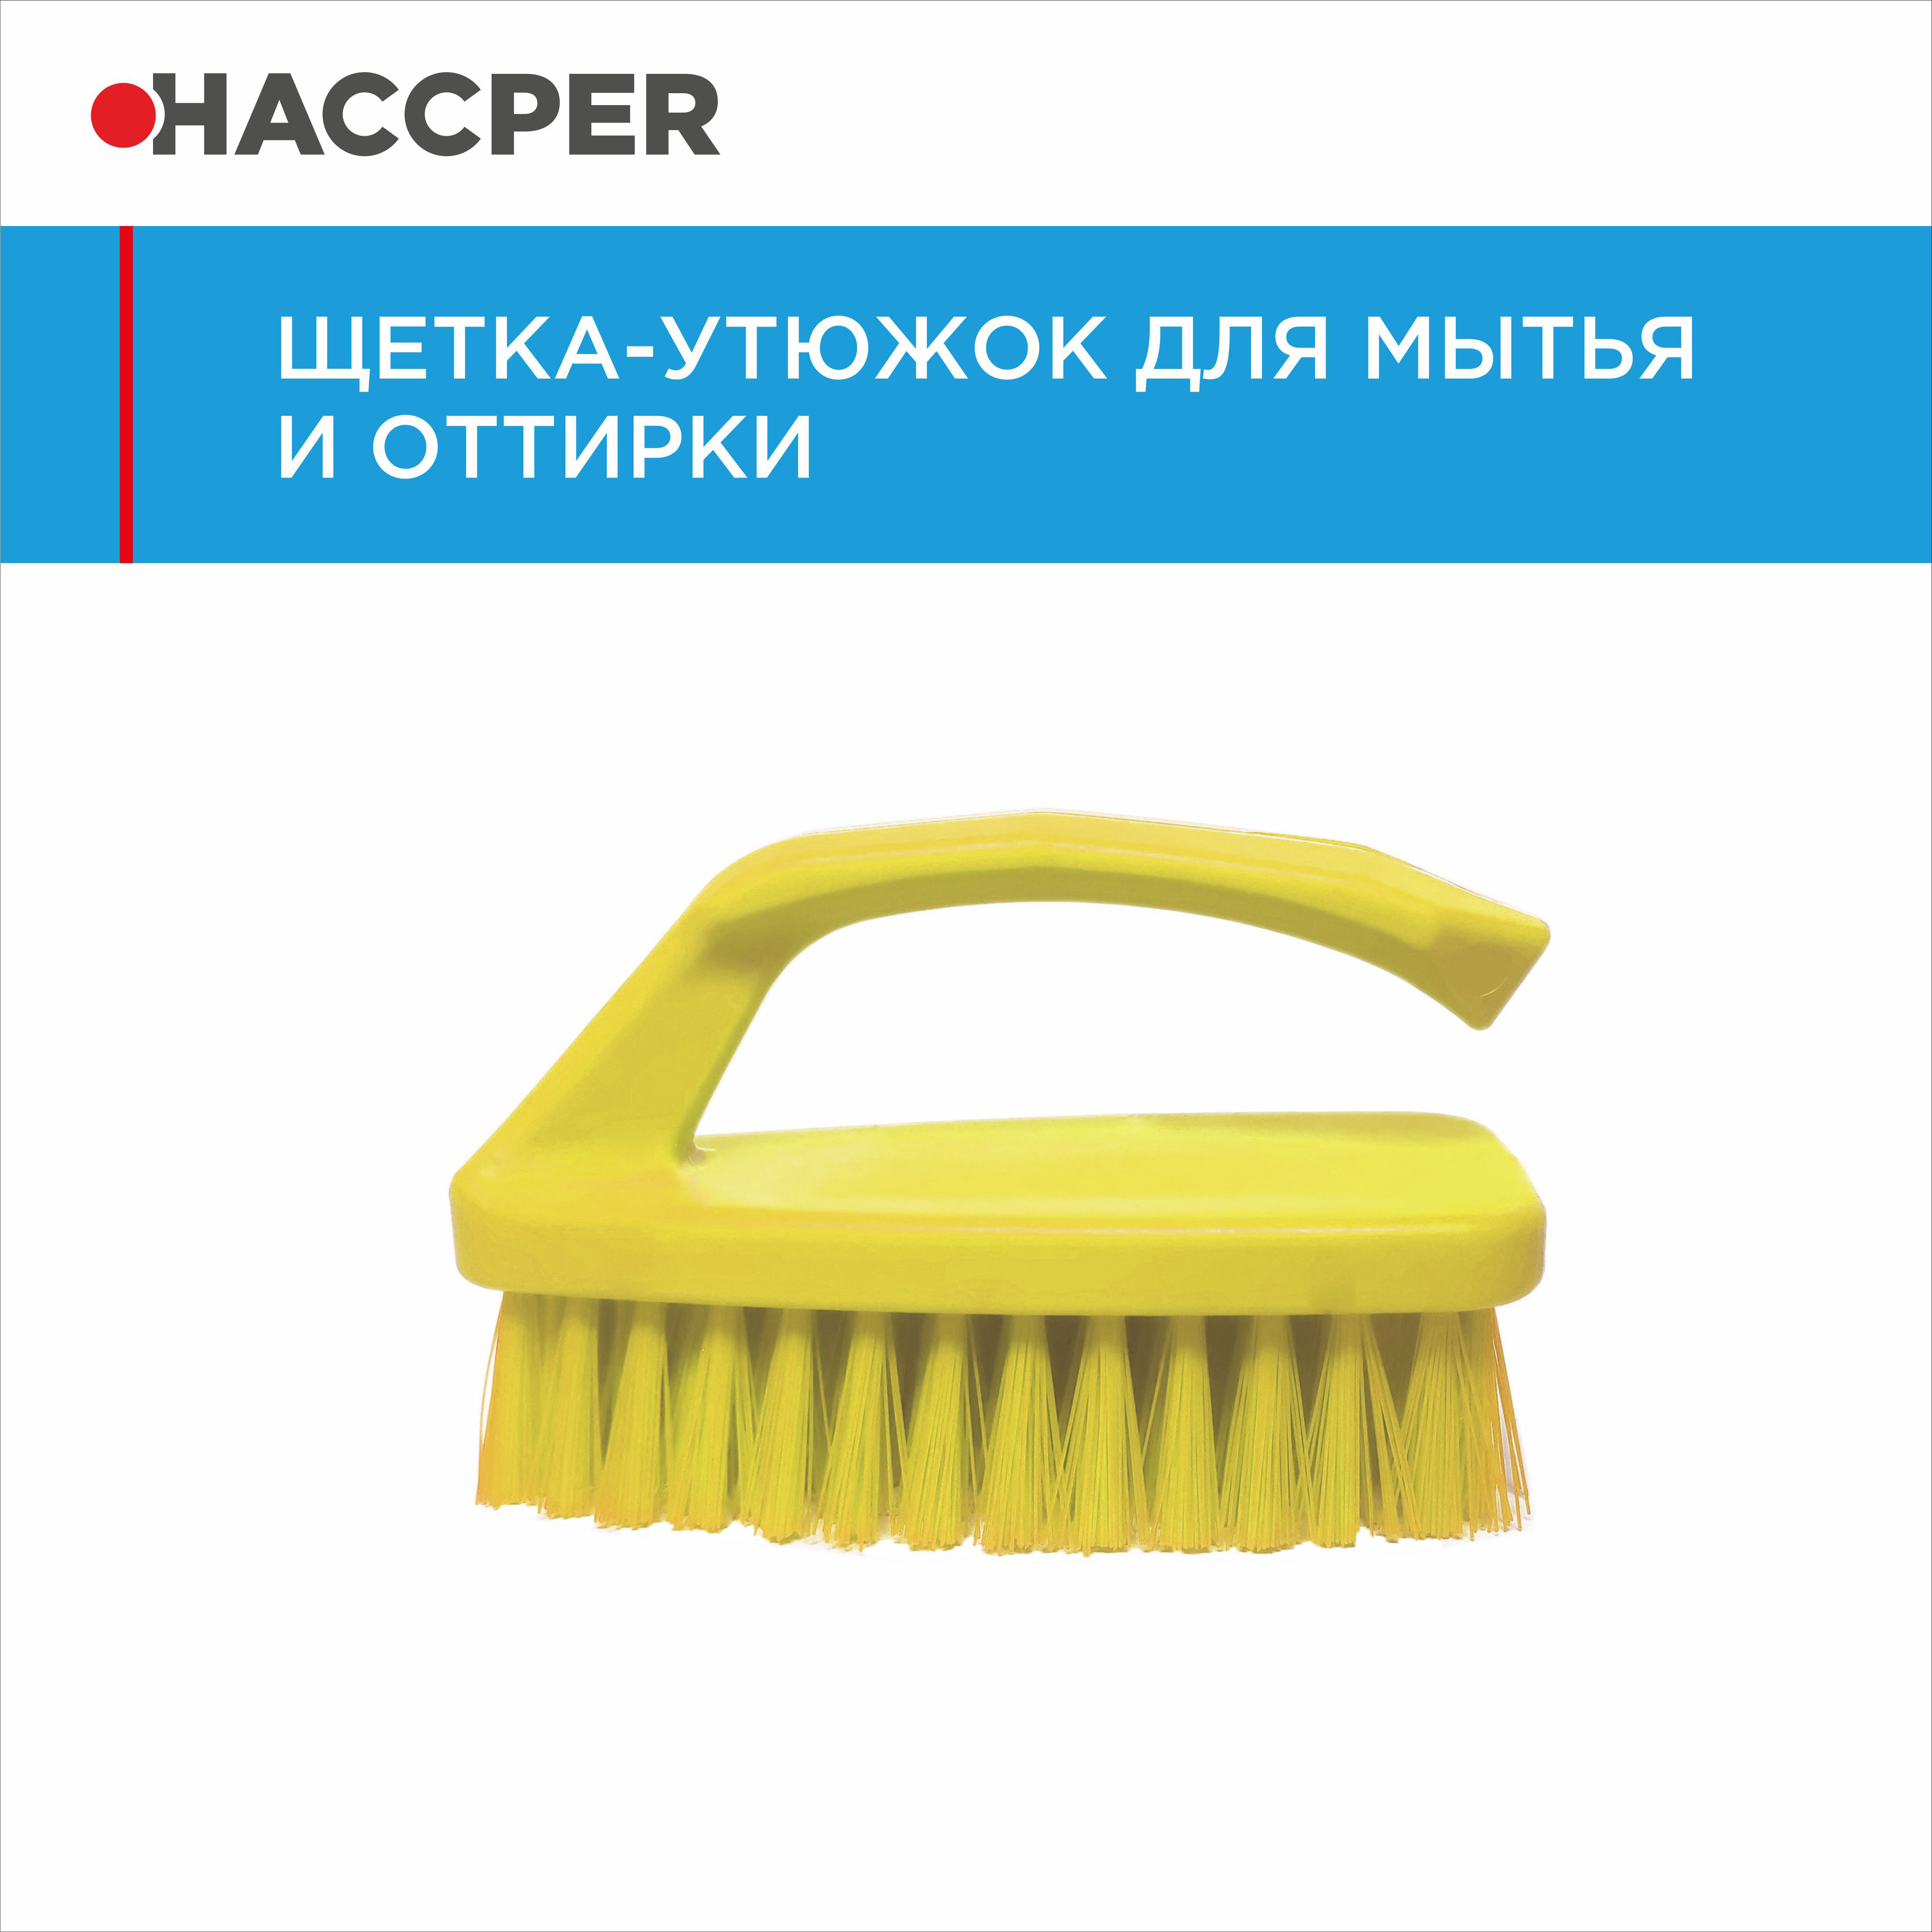 Щетка-утюжок HACCPER для мытья и оттирки, желтый